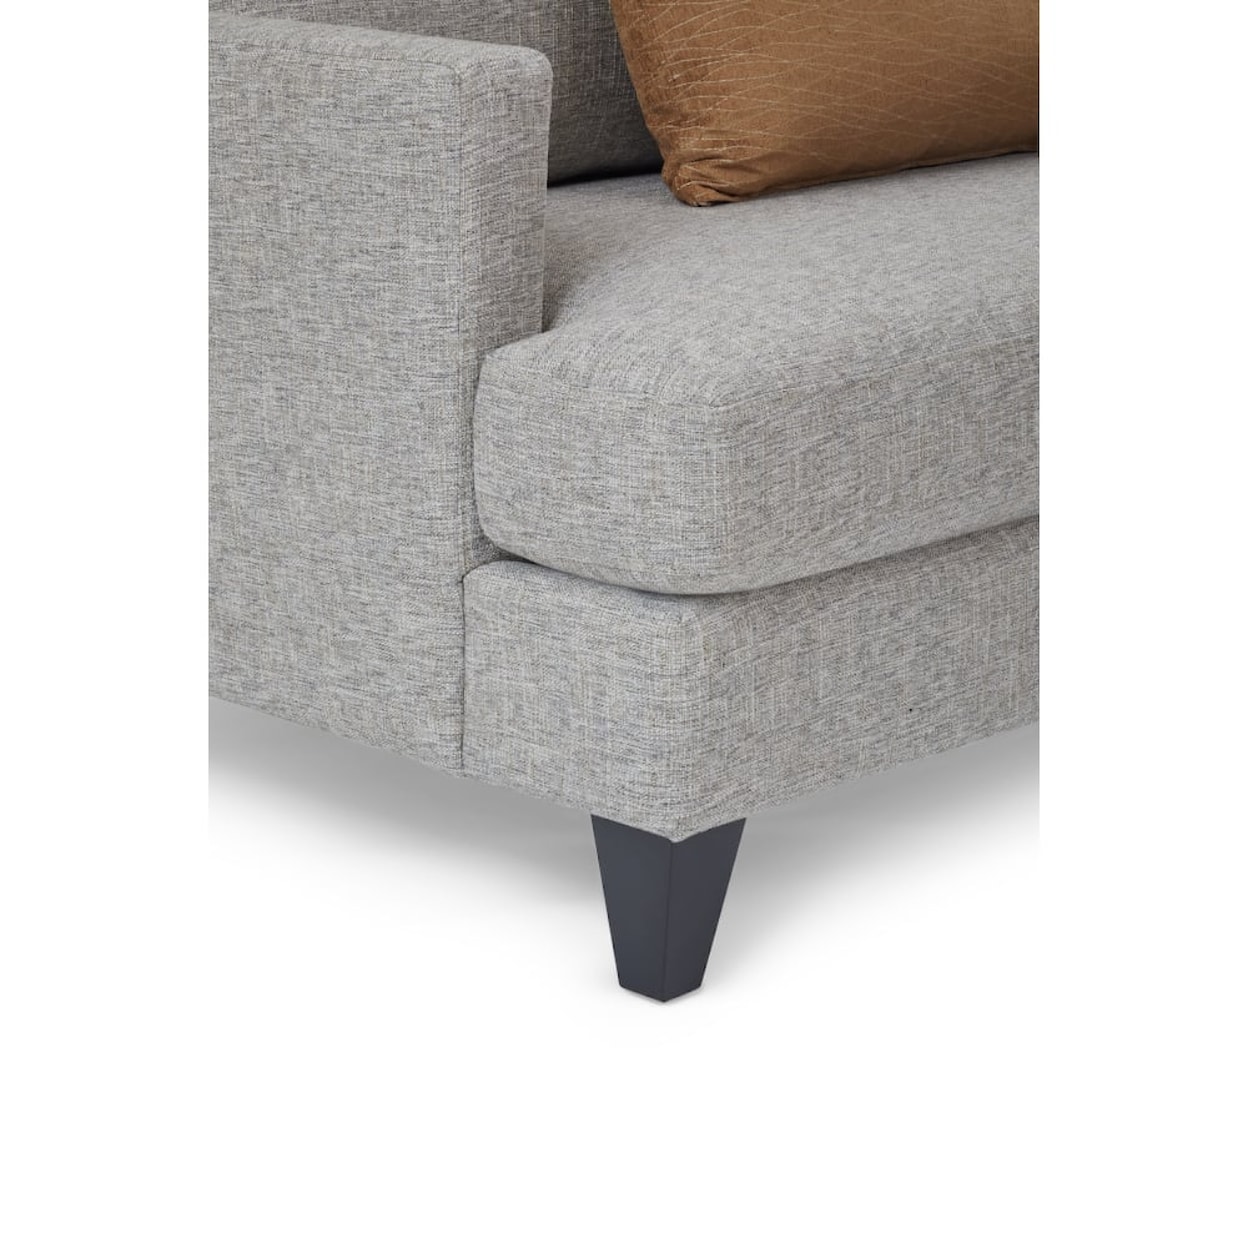 La-Z-Boy Emric Upholstered Sectional Sofa